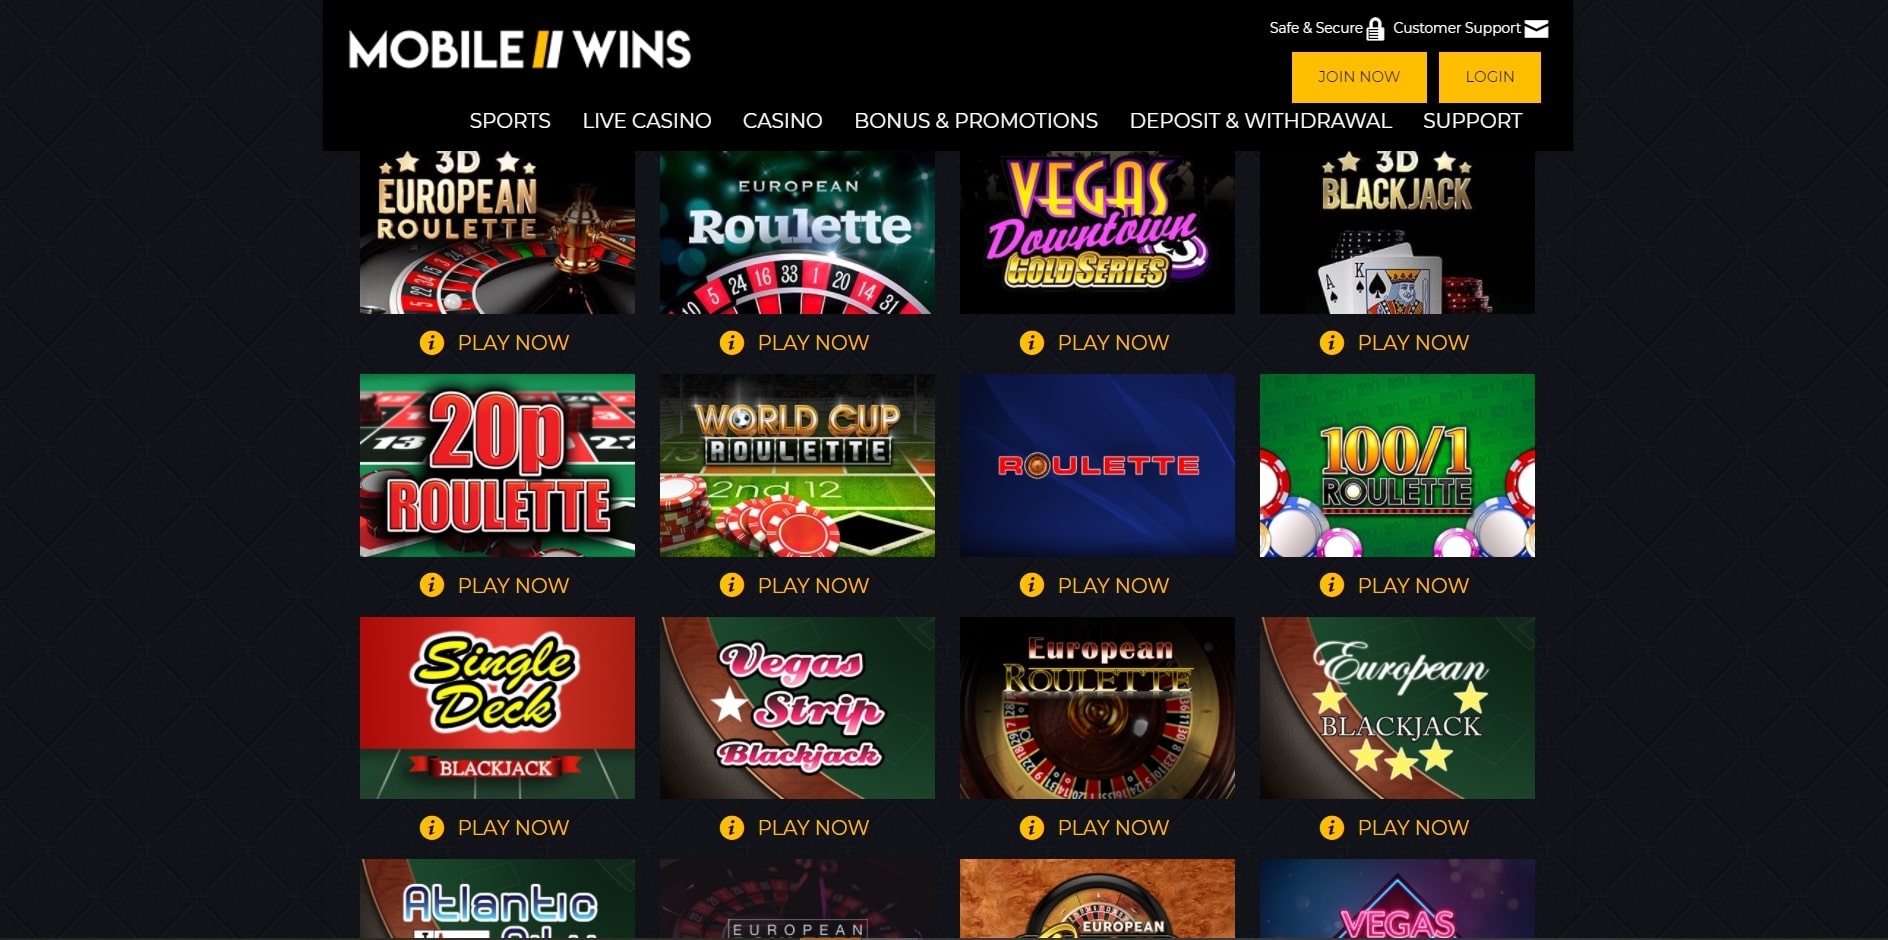 Mobile Wins Casino Games